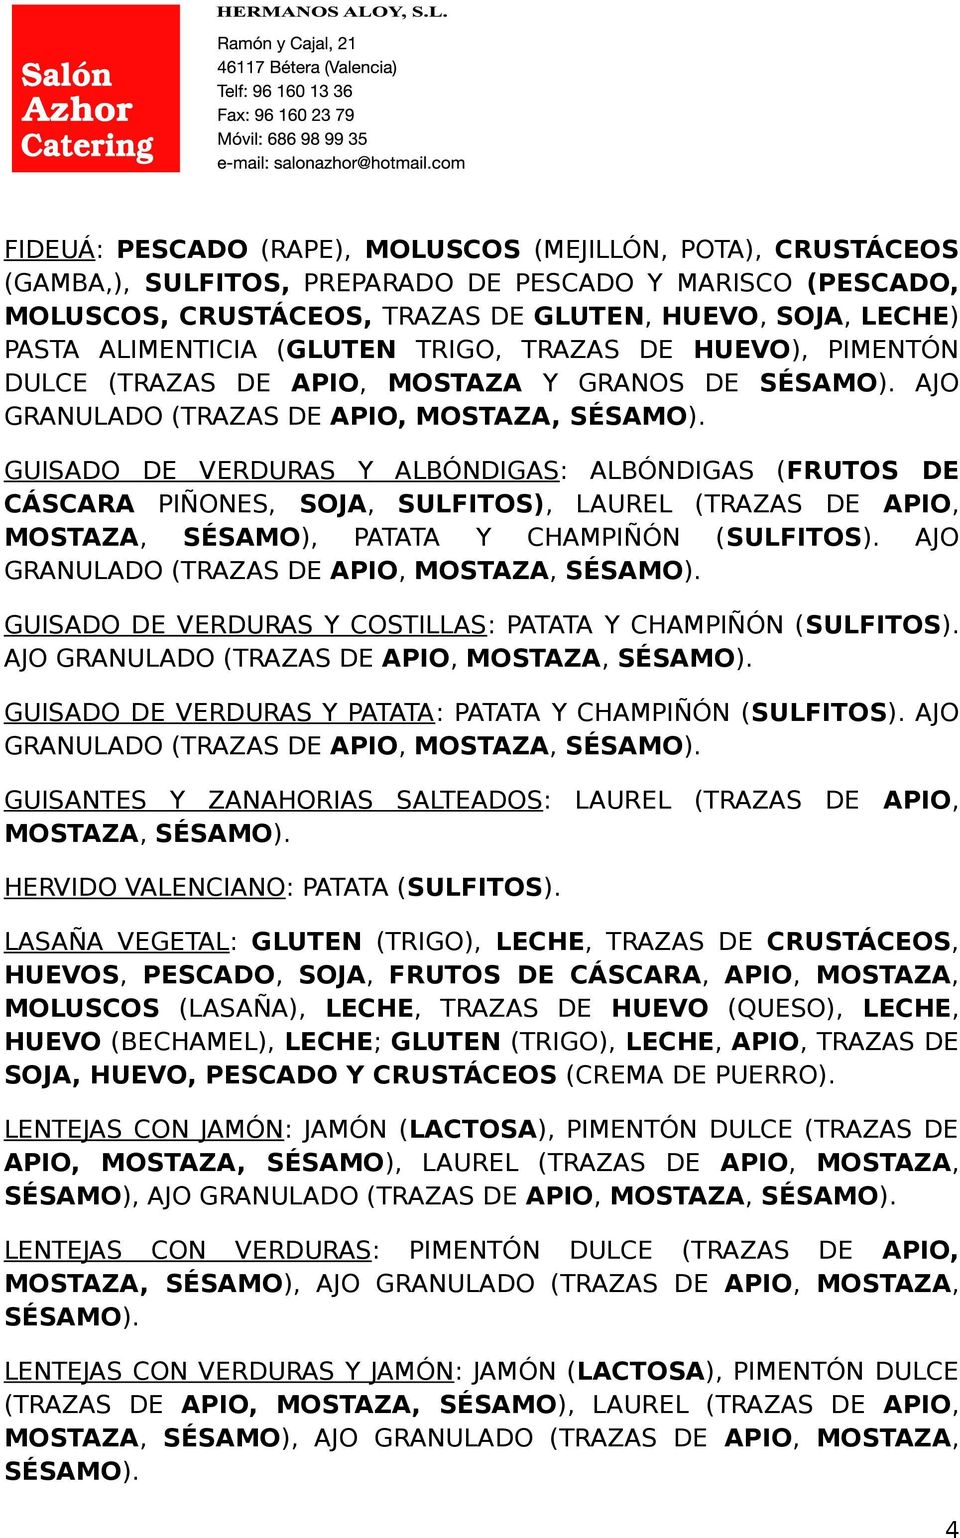 AJO GUISADO DE VERDURAS Y ALBÓNDIGAS: ALBÓNDIGAS (FRUTOS DE CÁSCARA PIÑONES, SOJA, SULFITOS), LAUREL (TRAZAS DE APIO, MOSTAZA, SÉSAMO), PATATA Y CHAMPIÑÓN (SULFITOS).